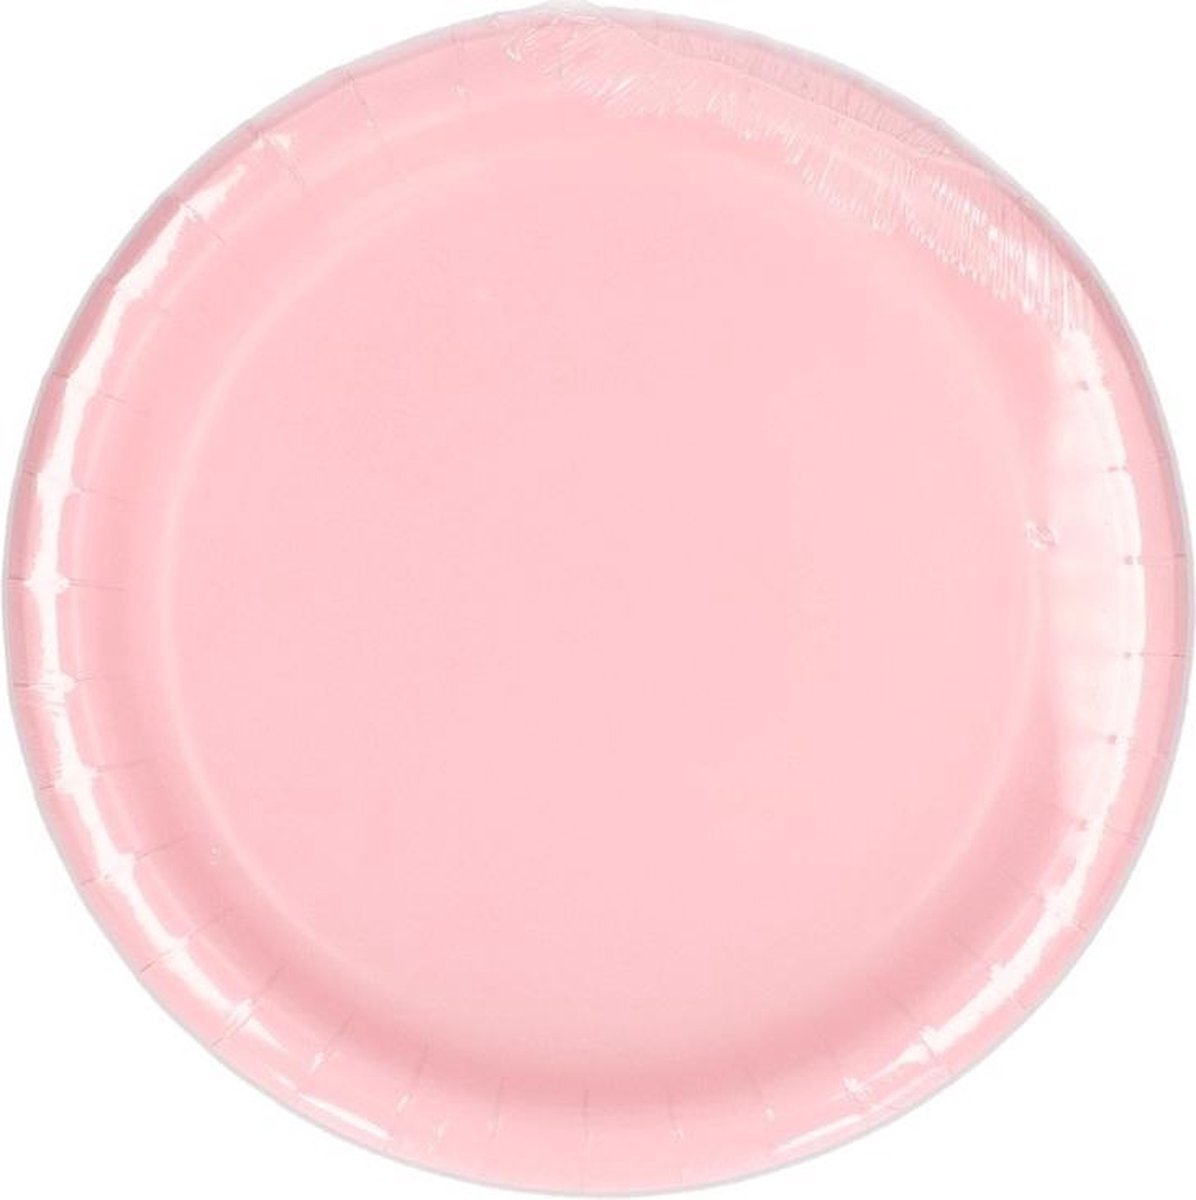 petites assiettes rose clair pastel doré vaisselle jetable